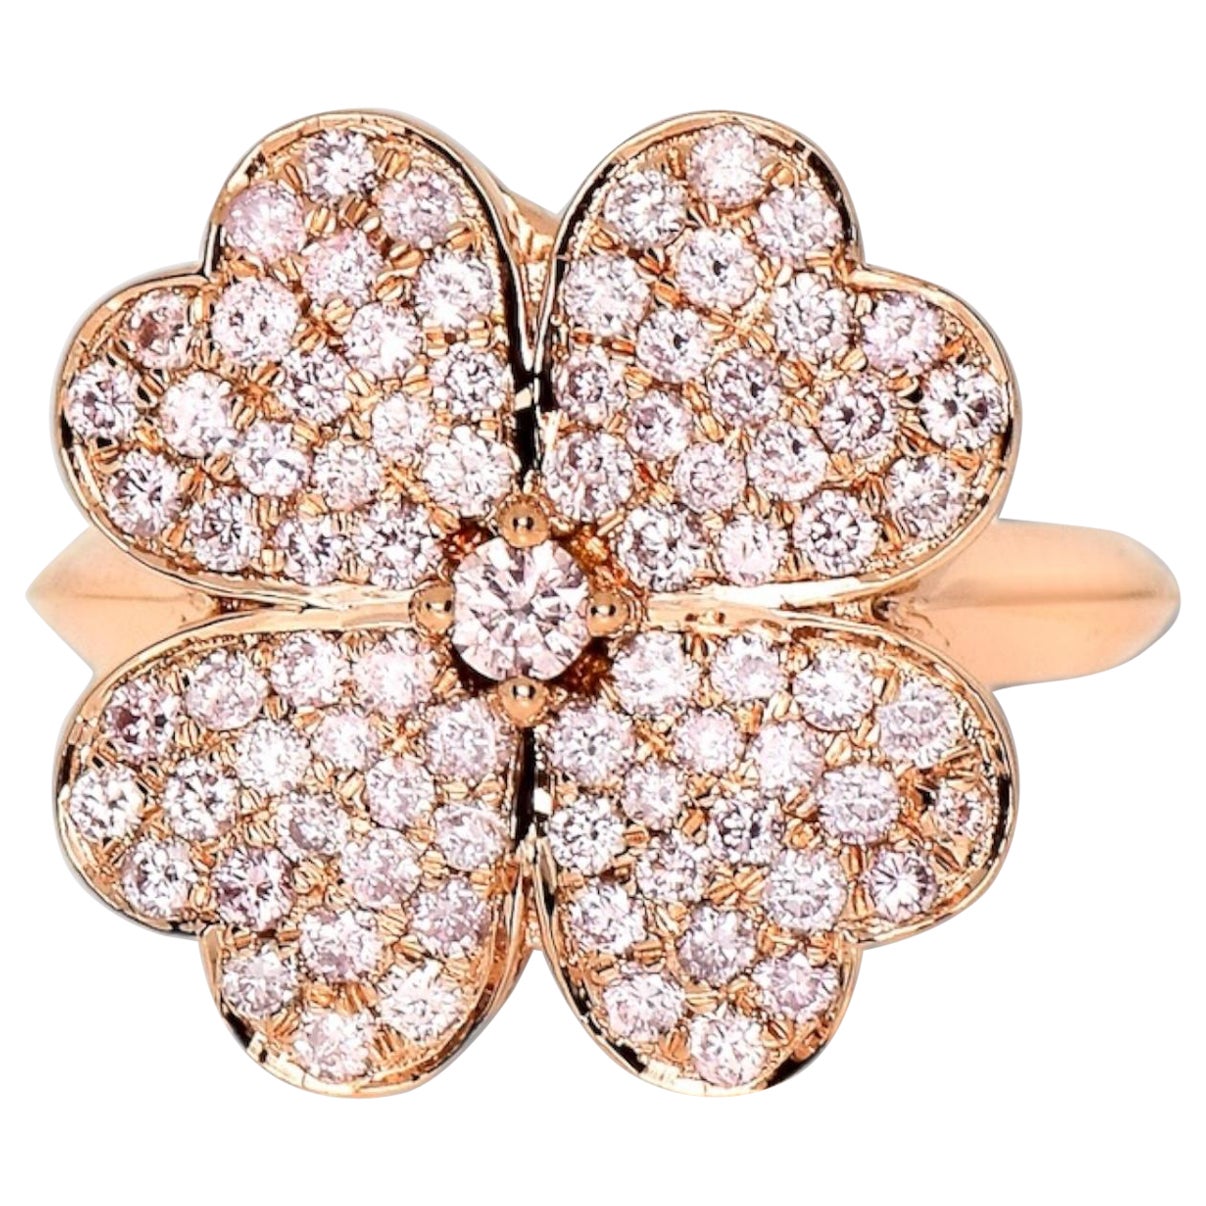 IGI 14K 0,98 Karat natürliche rosa Diamanten Glücks Kleeblatt Antiker Design Ring